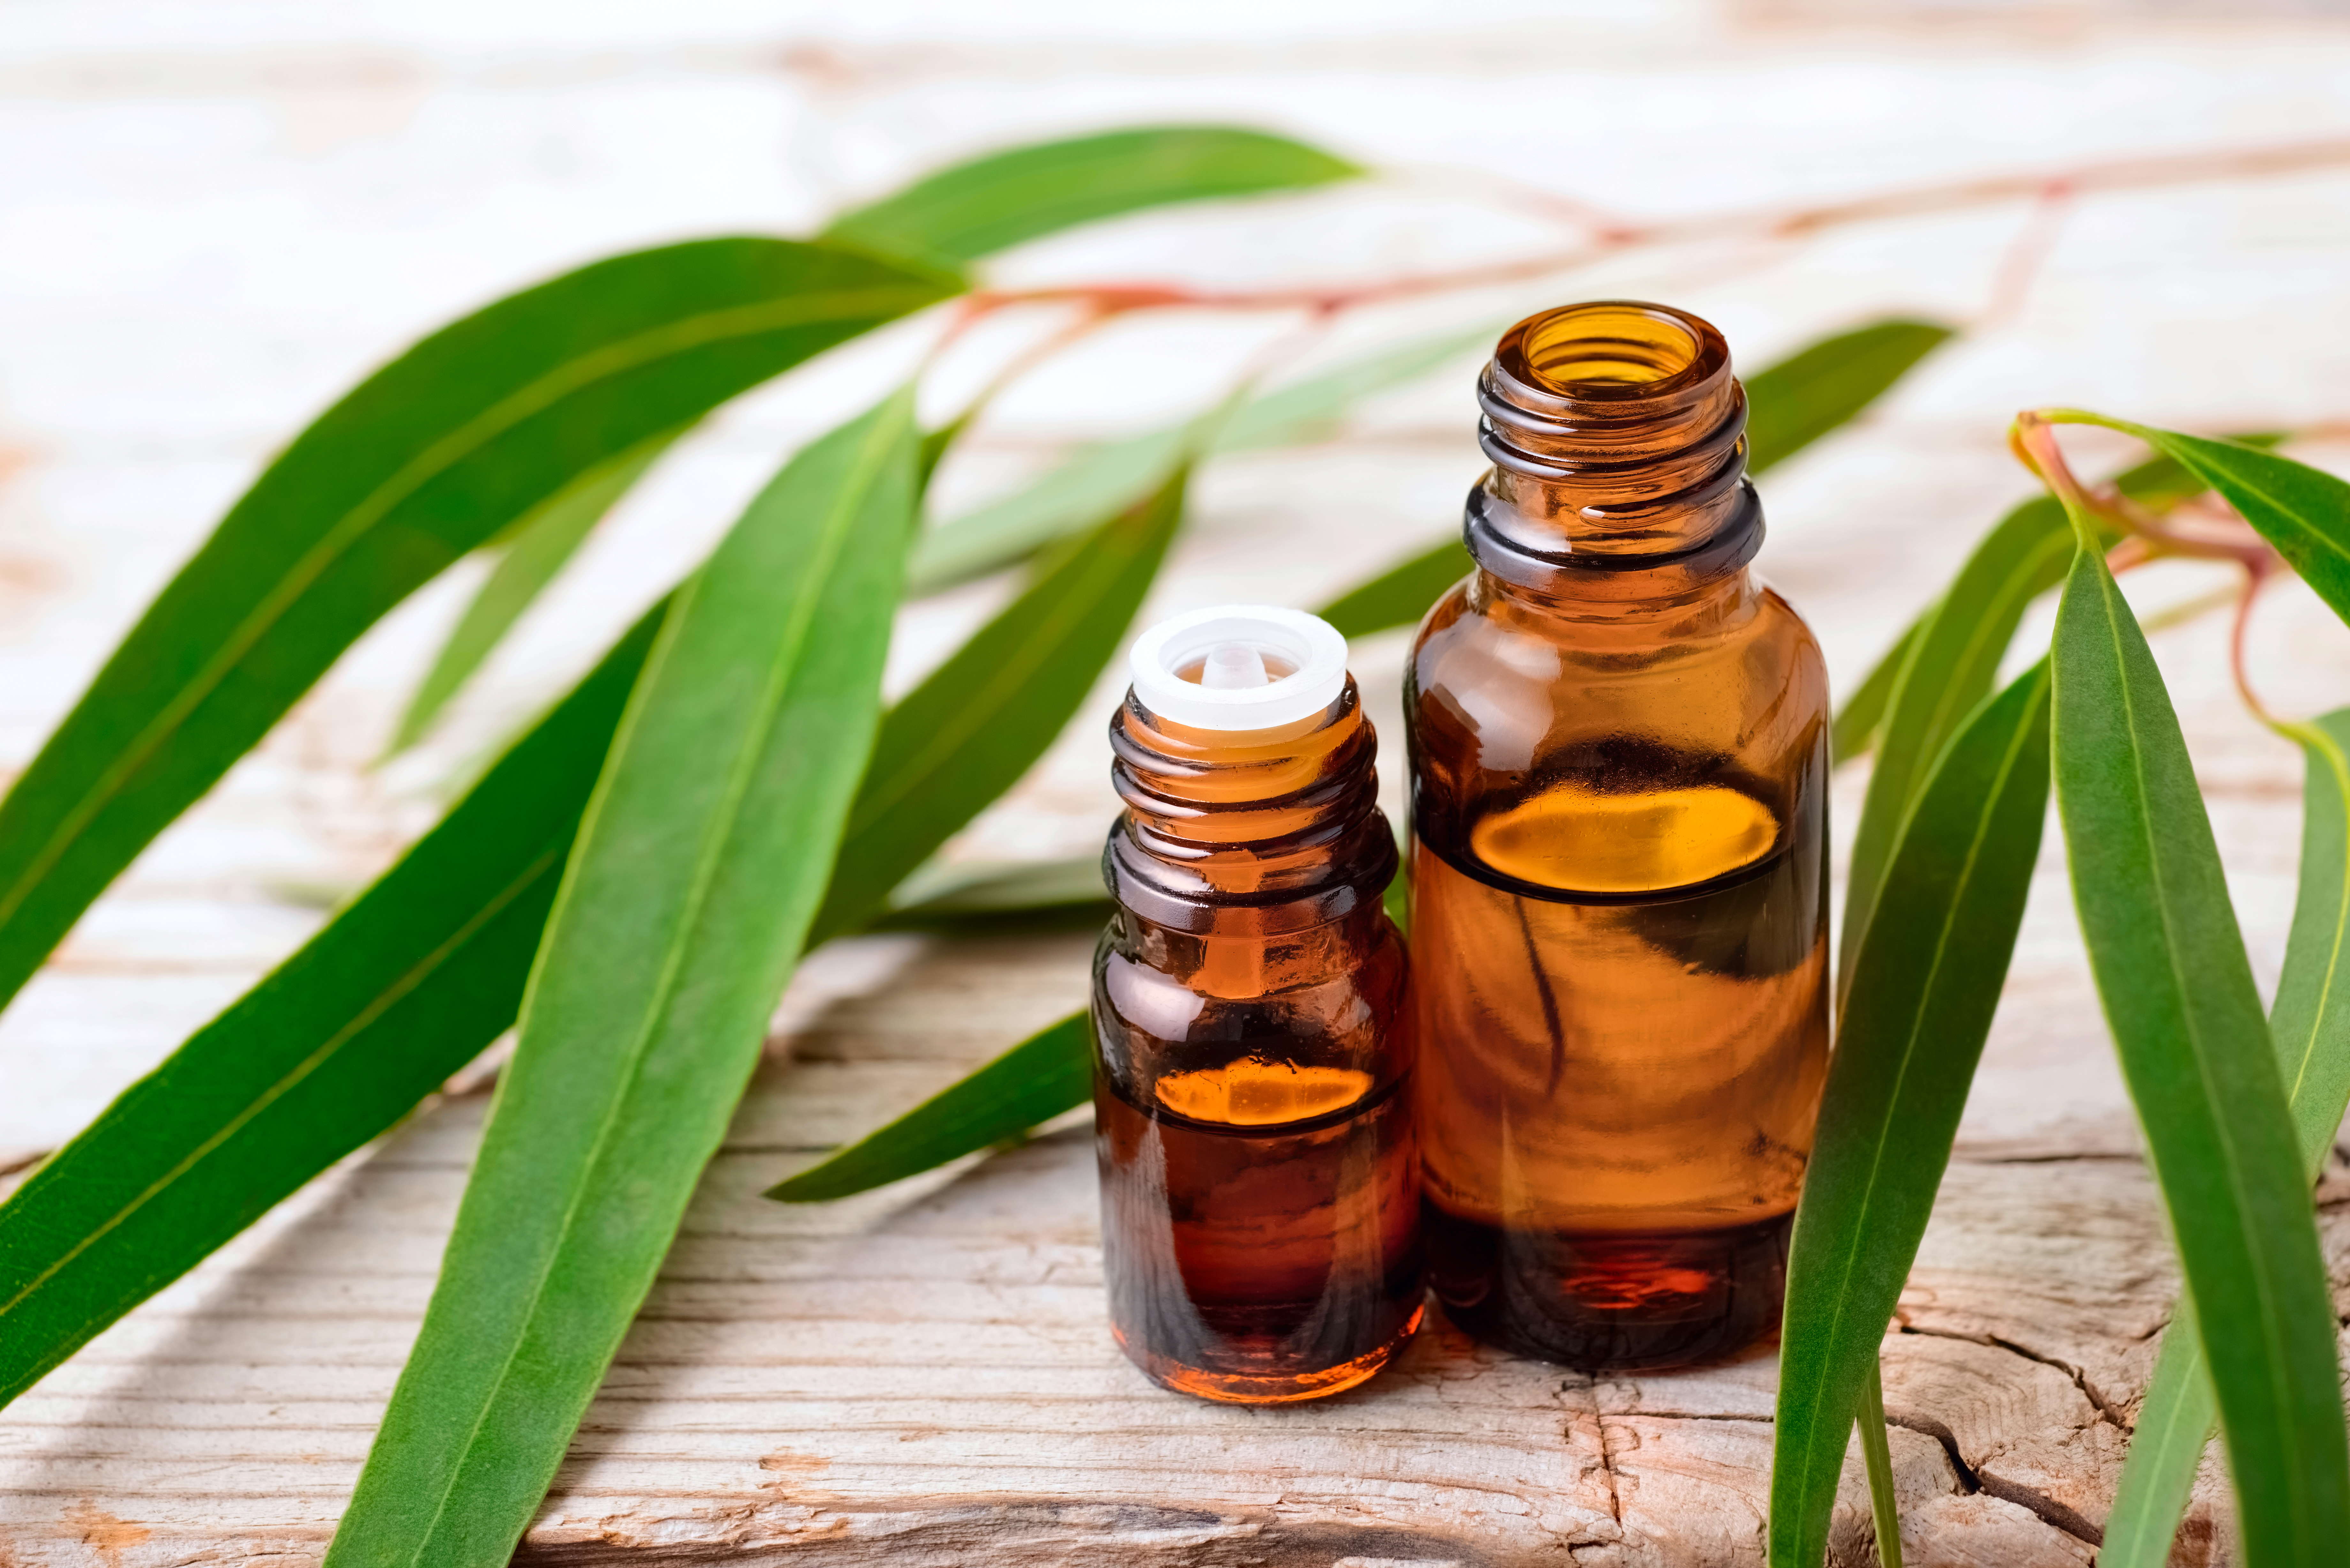 Eucalyptus essential oils